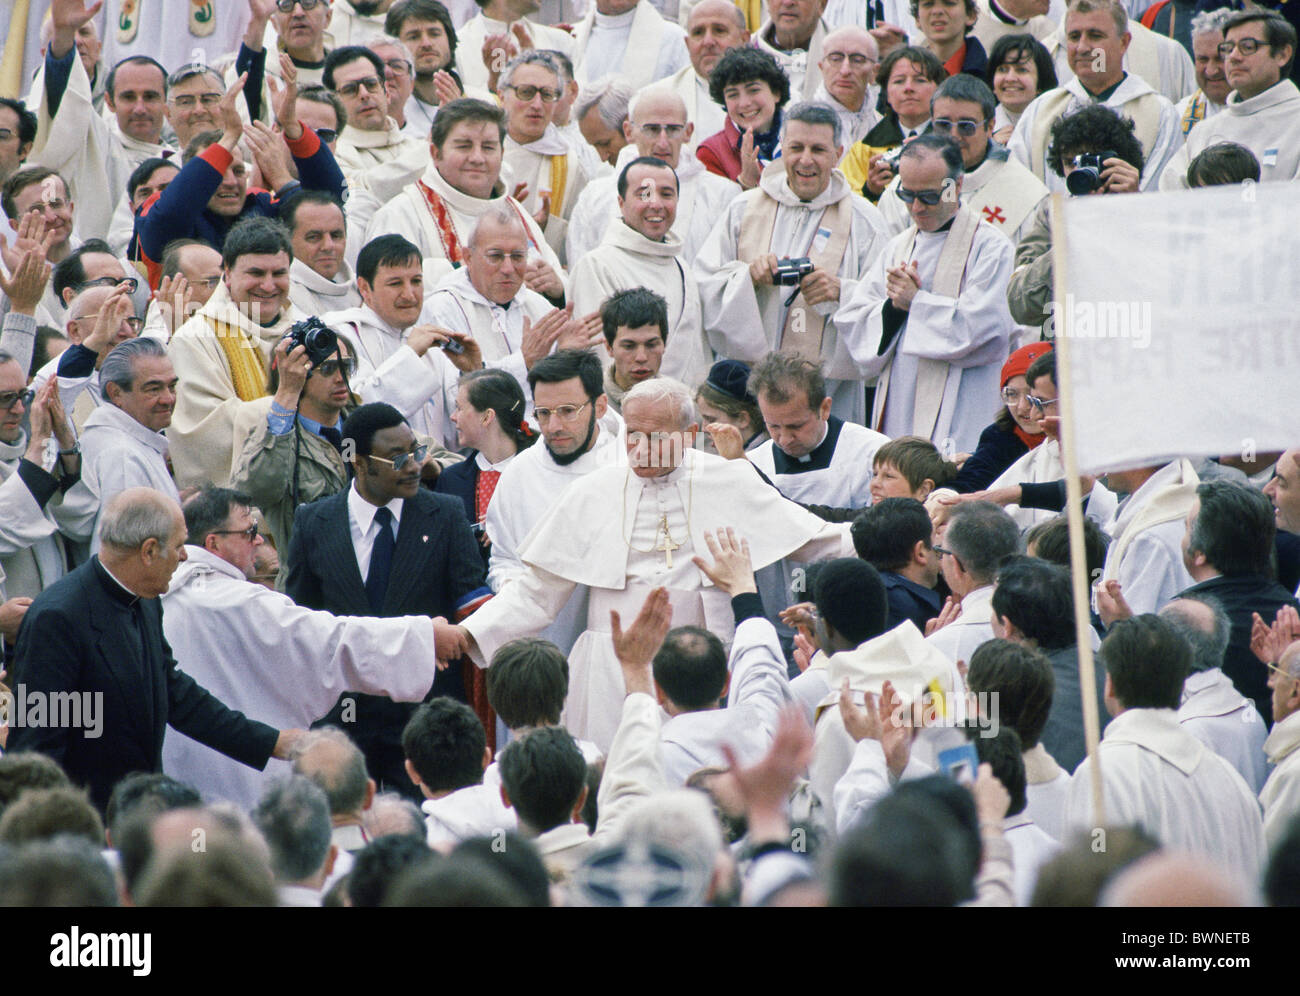 Le Pape Jean Paul II saluer les gens au cours d'une visite en Allemagne vers 1980 Banque D'Images